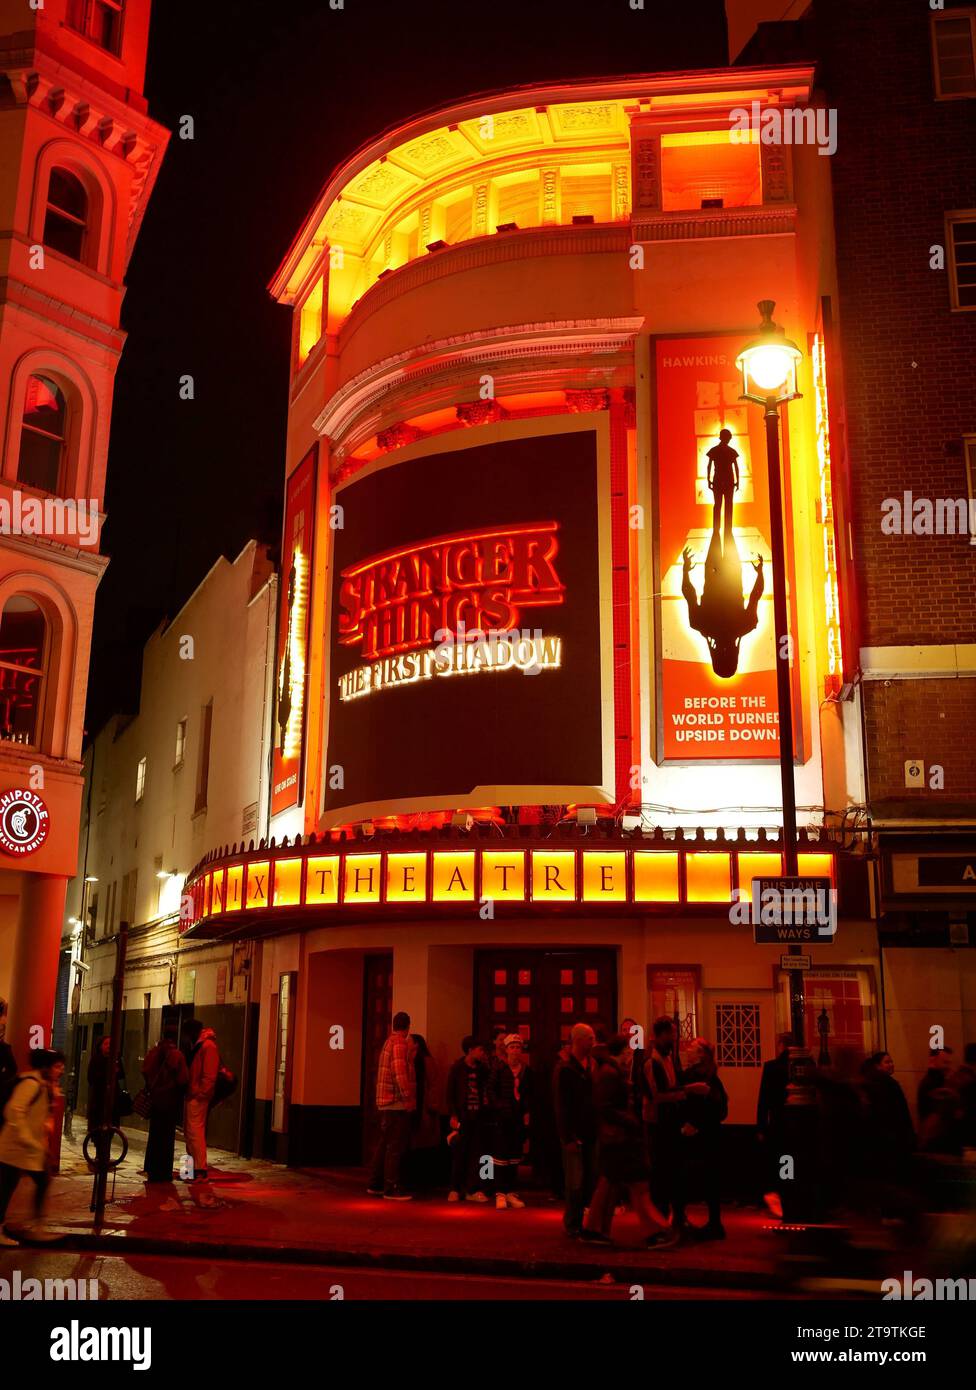 Stranger Things: The First Shadow, Aufführung im Phoenix Theatre im Londoner West End. London Großbritannien Stockfoto